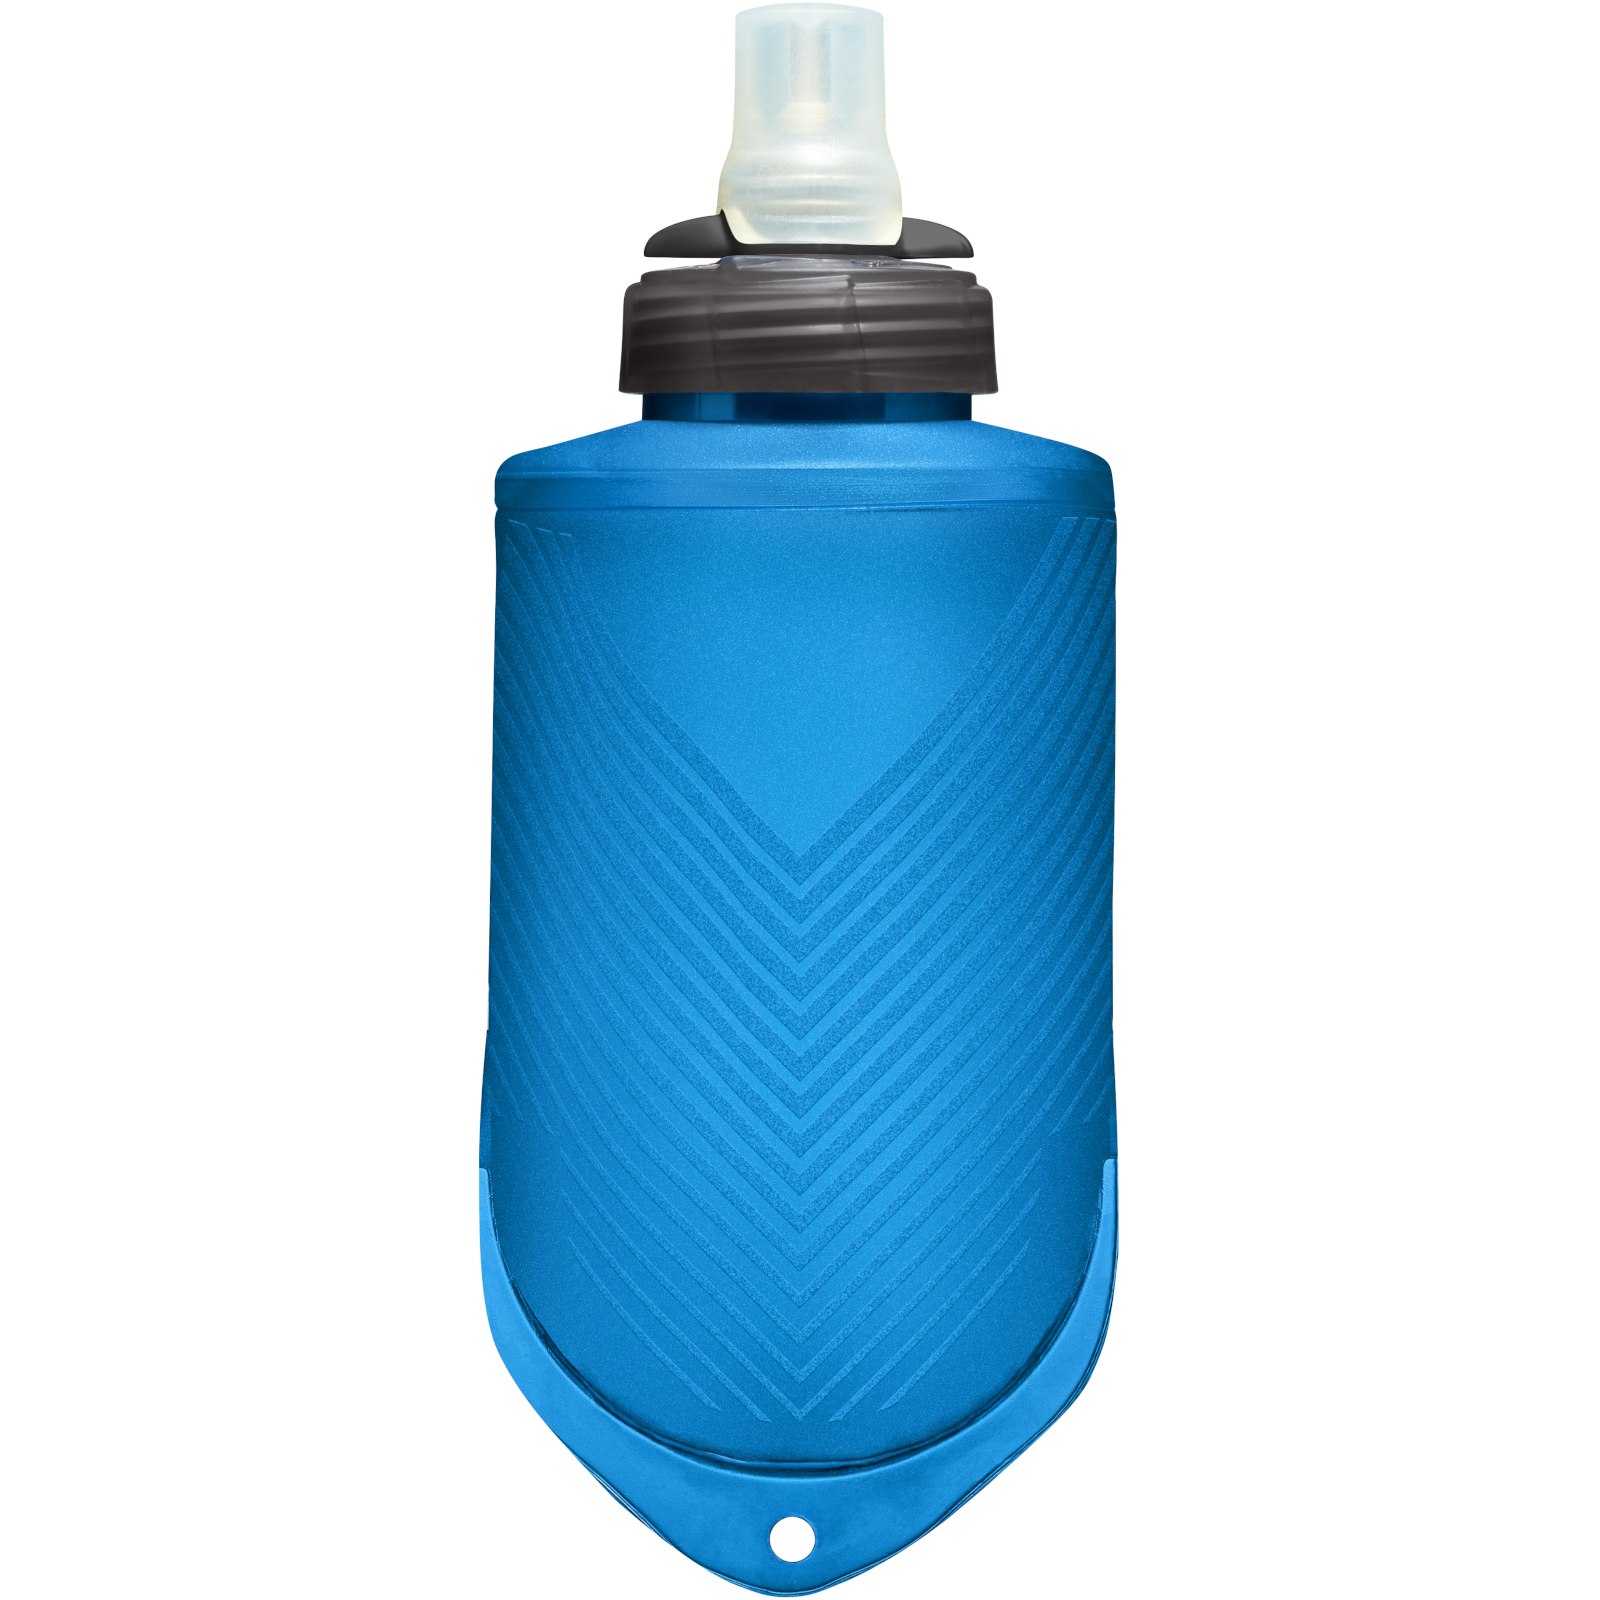 Produktbild von CamelBak Quick Stow Flask Trinkflasche 355ml - Blue